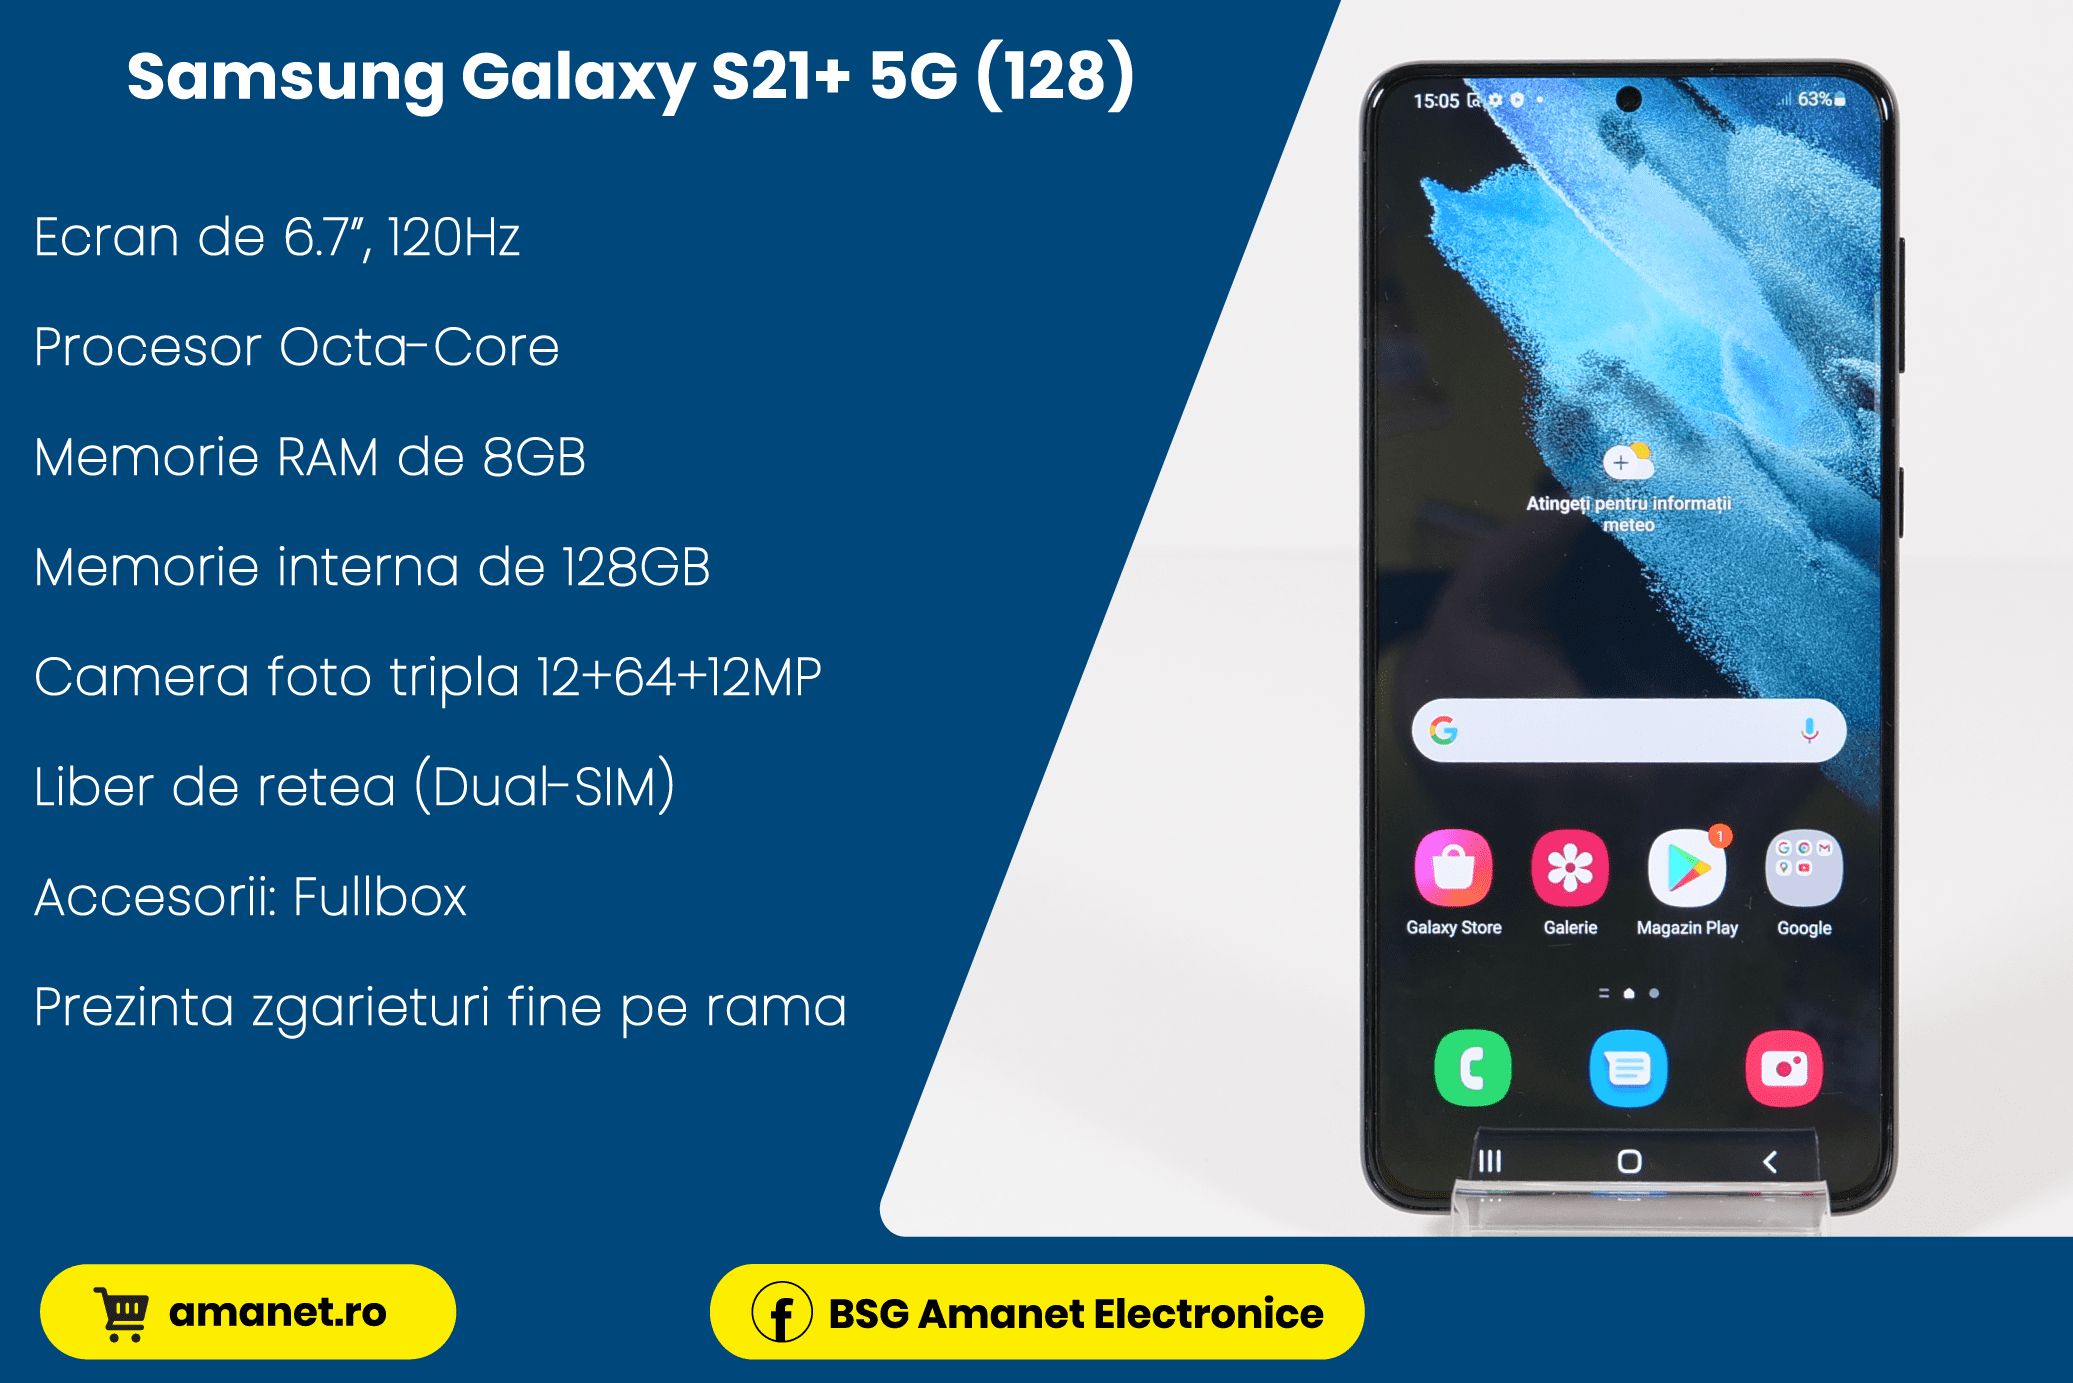 Samsung Galaxy S21+ 5G (128) - BSG Amanet & Exchange